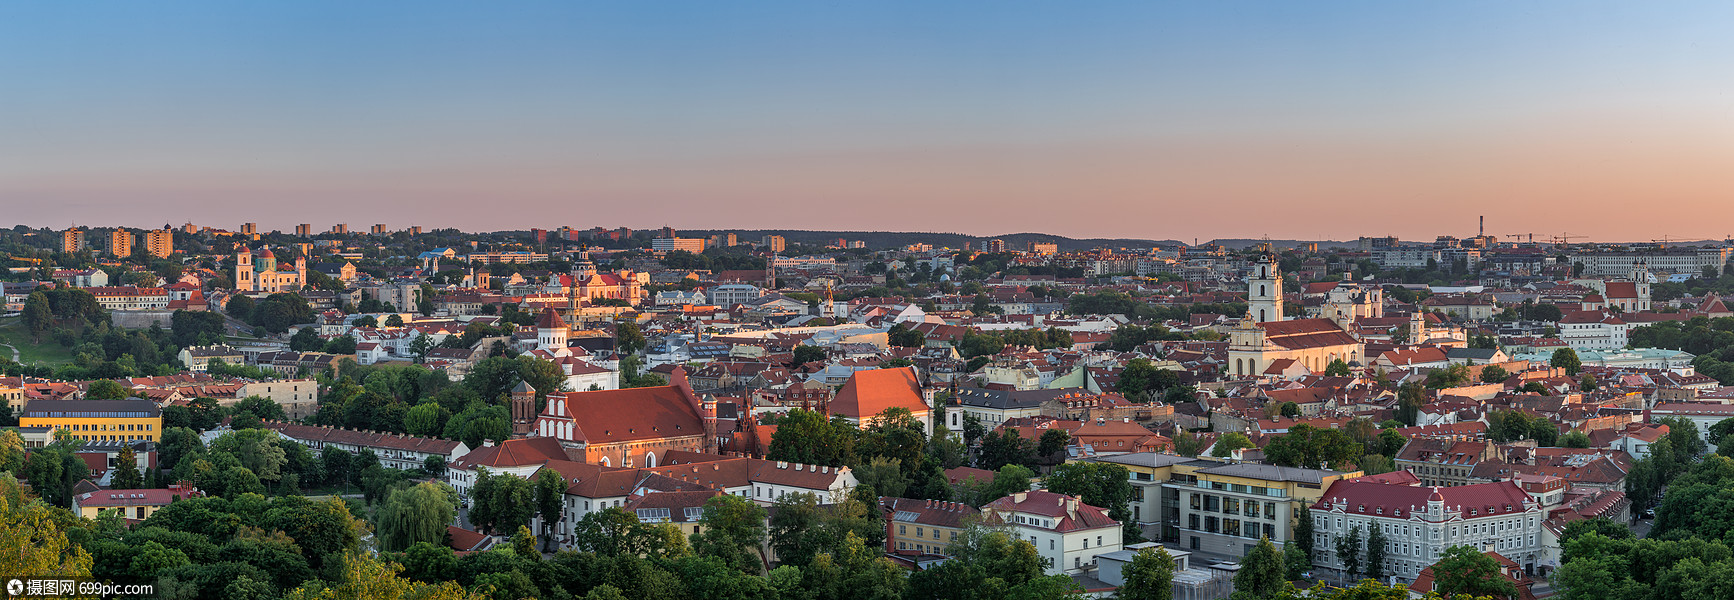 立陶宛首都维尔纽斯恢宏的城市全景图